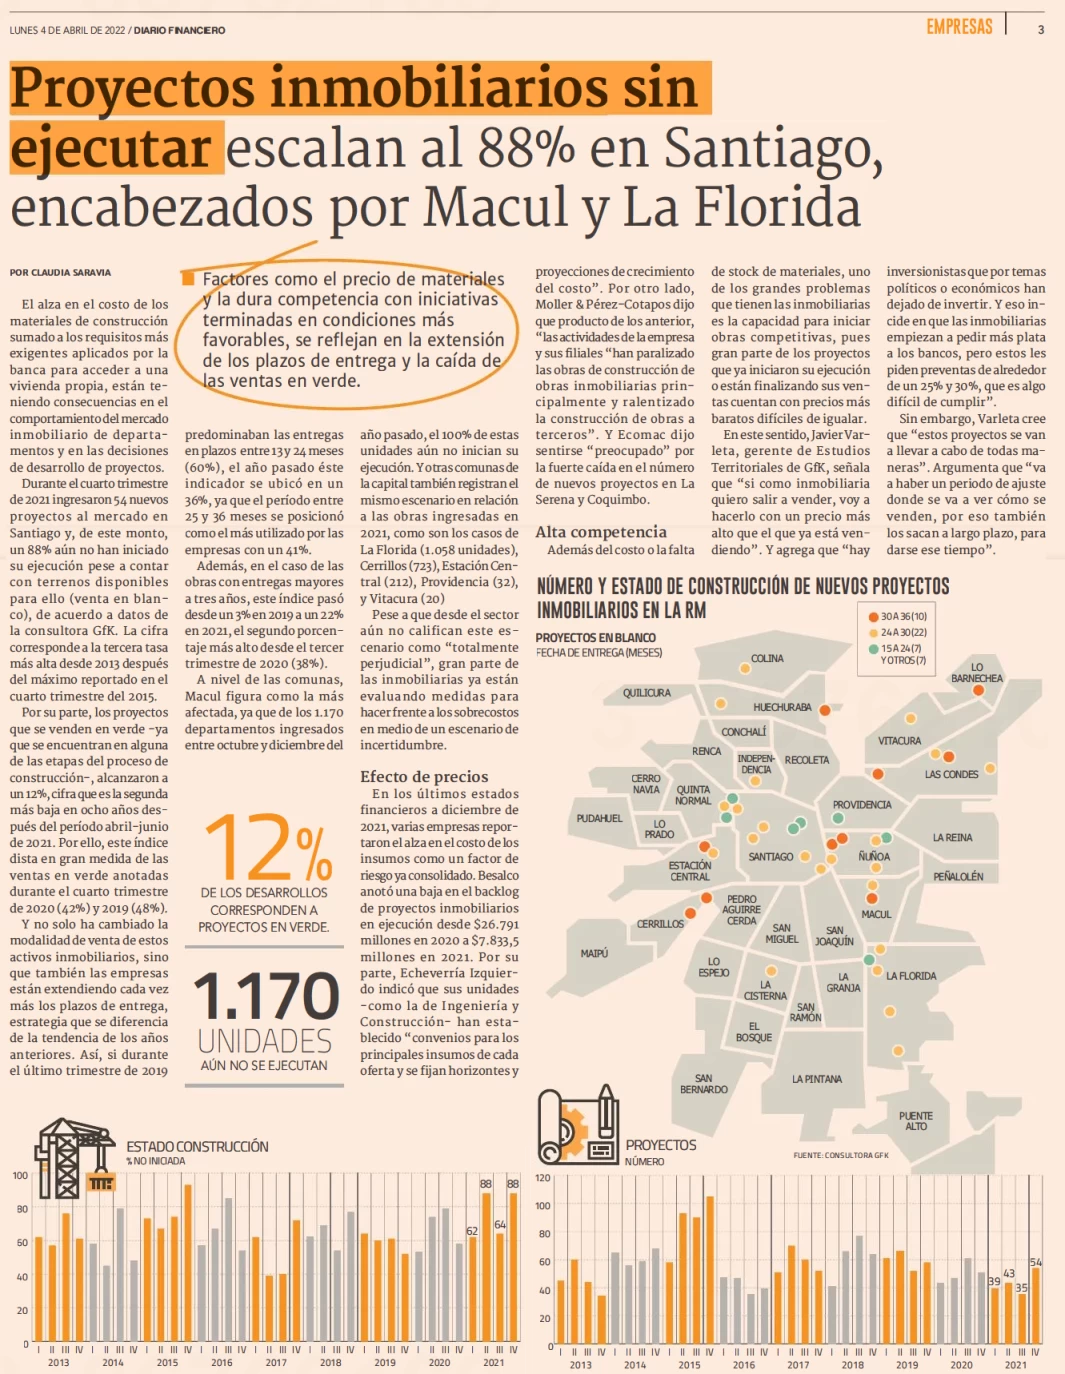 Proyectos inmobiliarios sin ejecutar escalan al 88% en Santiago, encabezados por Macul y La Florida